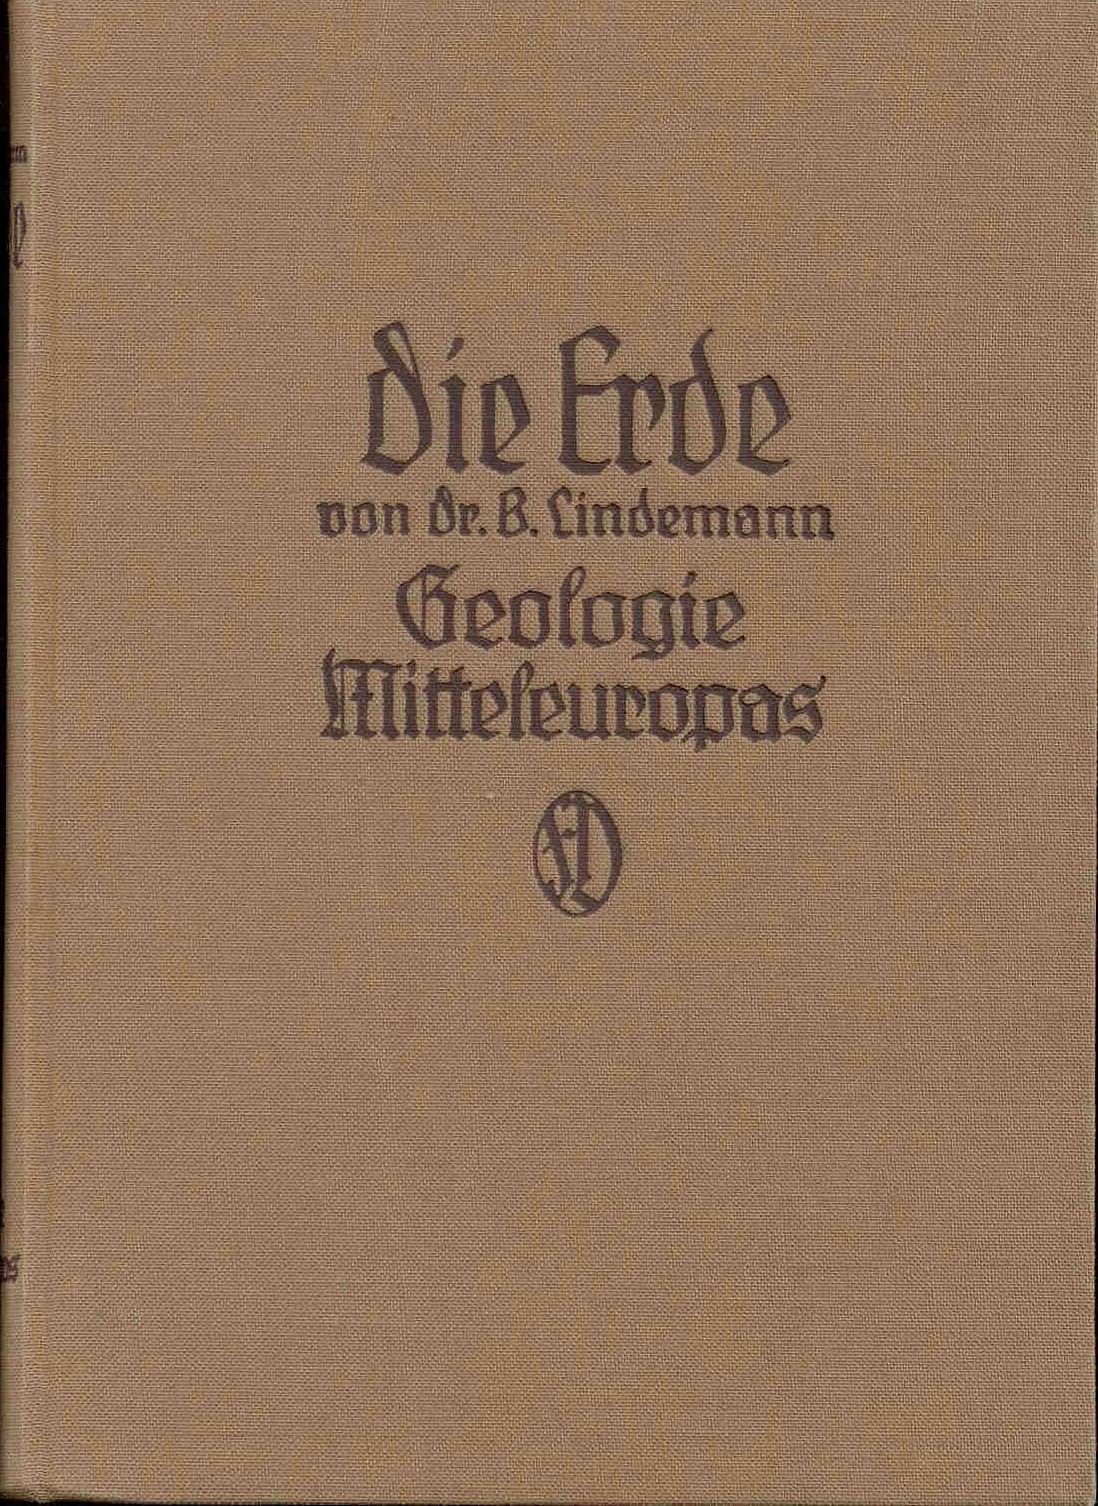 Lindemann, B.: Die Erde. Eine allgemeinverständliche Geologie. 2 Bände. Band 1: Geologische Kräfte, Band 2: Geologie Mitteleuropas.